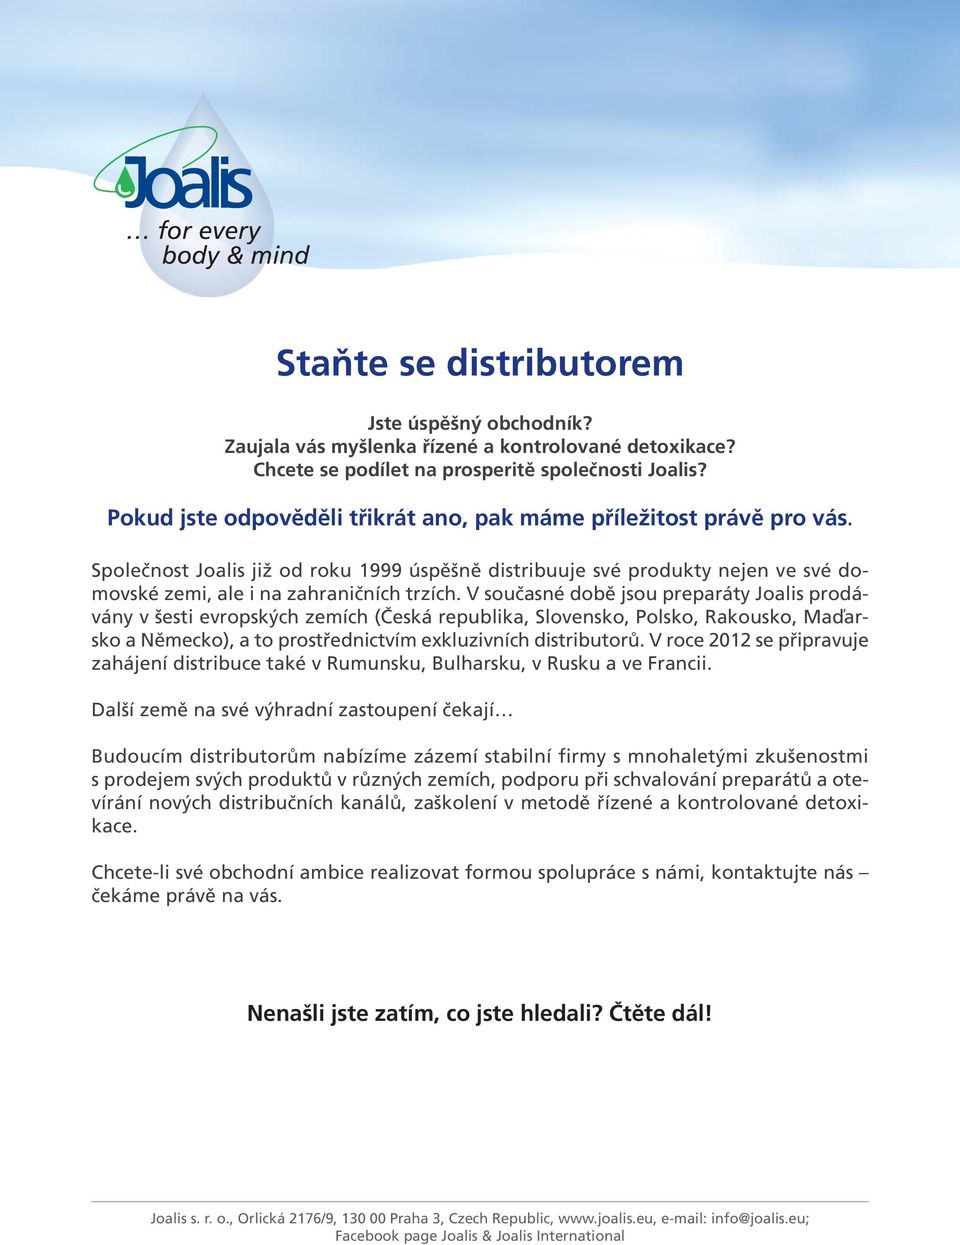 V současné době jsou preparáty Joalis prodávány v šesti evropských zemích (Česká republika, Slovensko, Polsko, Rakousko, Maďarsko a Německo), a to prostřednictvím exkluzivních distributorů.